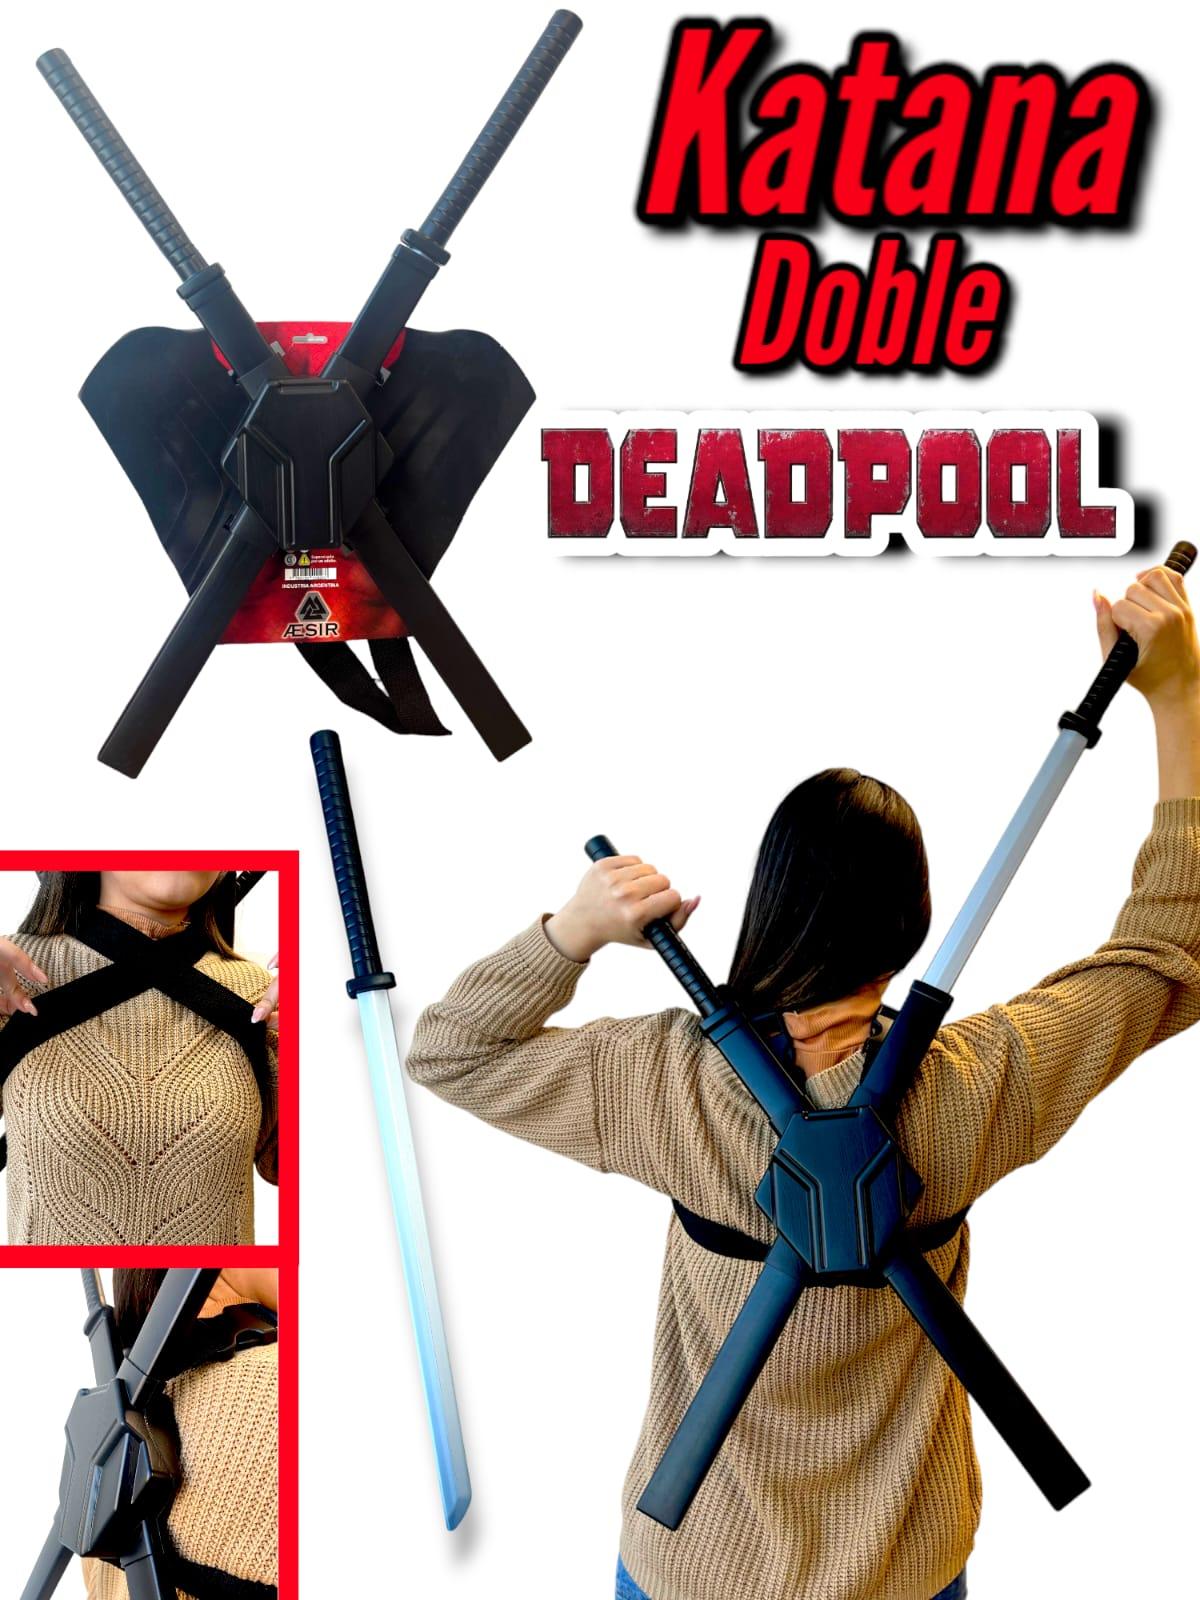 Katana doble Deadpool